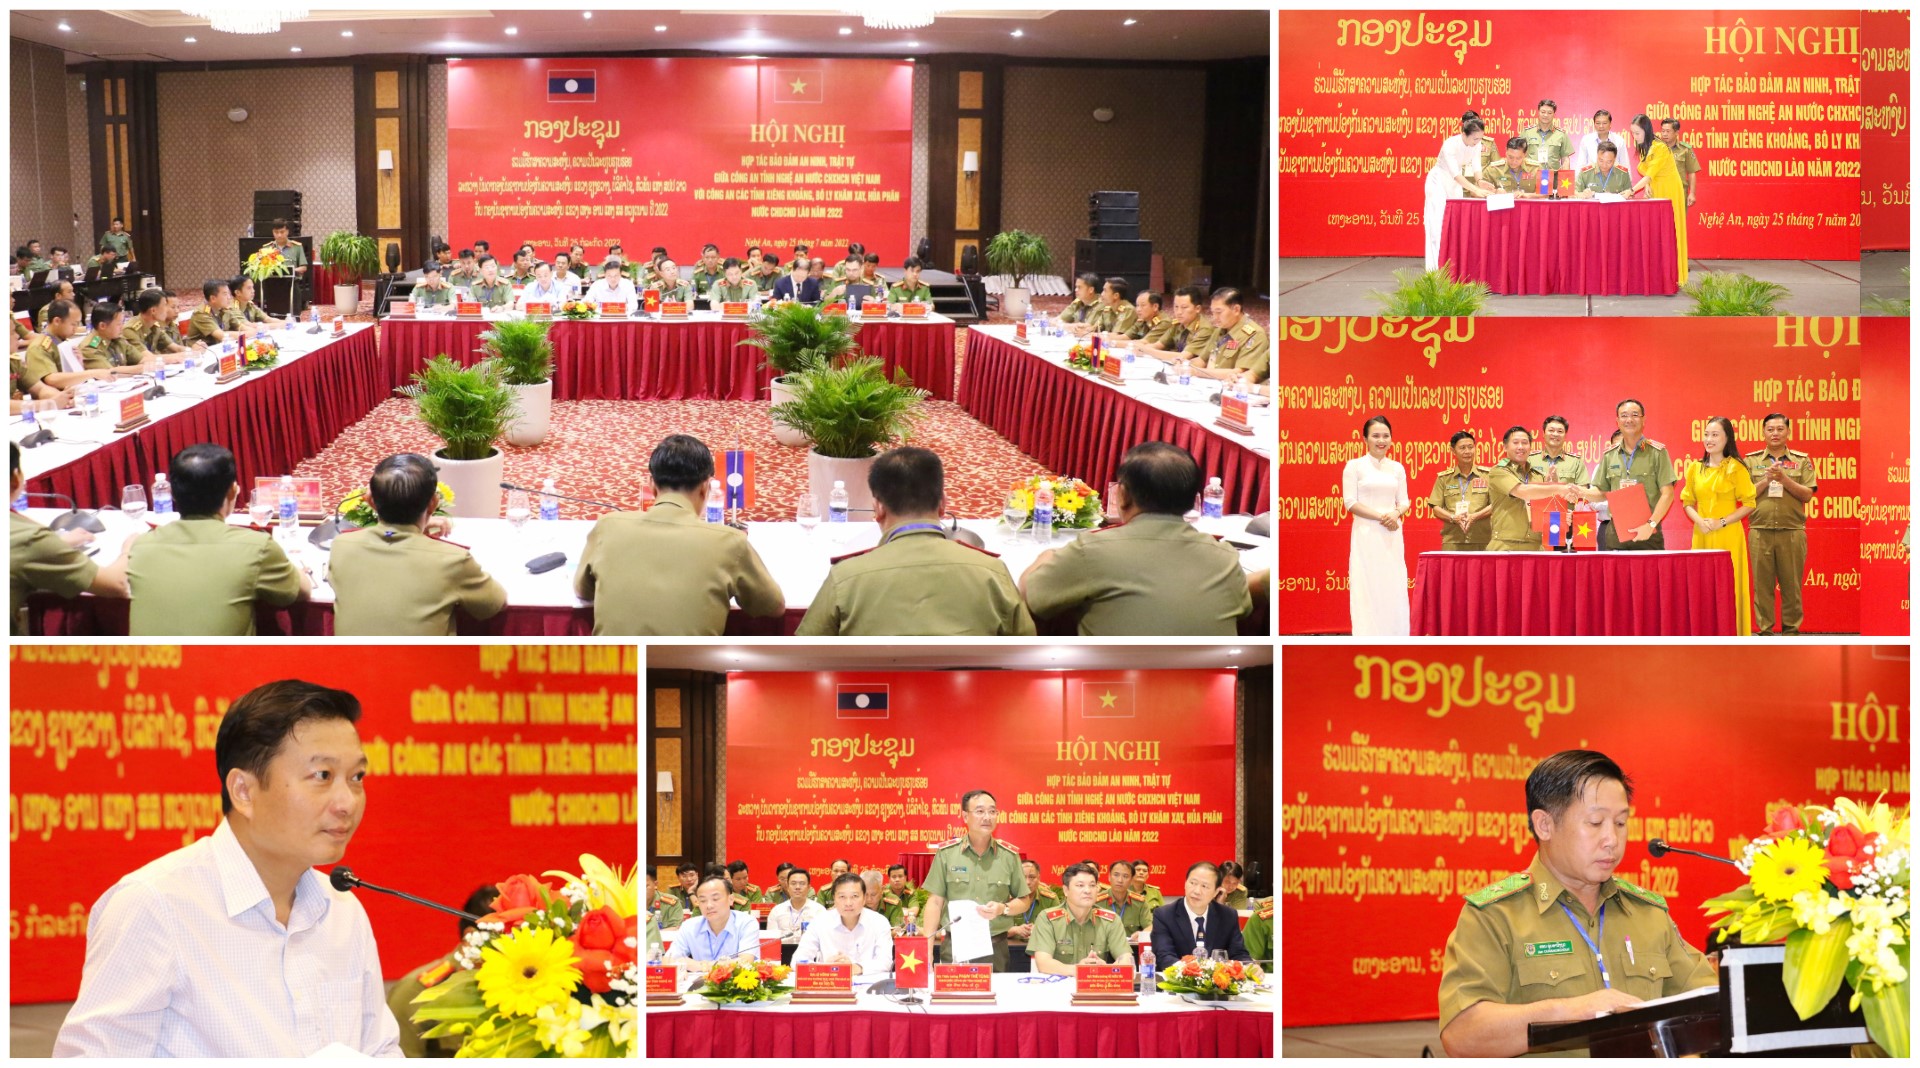 Hợp tác bảo đảm an ninh trật tự giữa Công an tỉnh Nghệ An với Công an 03 tỉnh nước bạn Lào